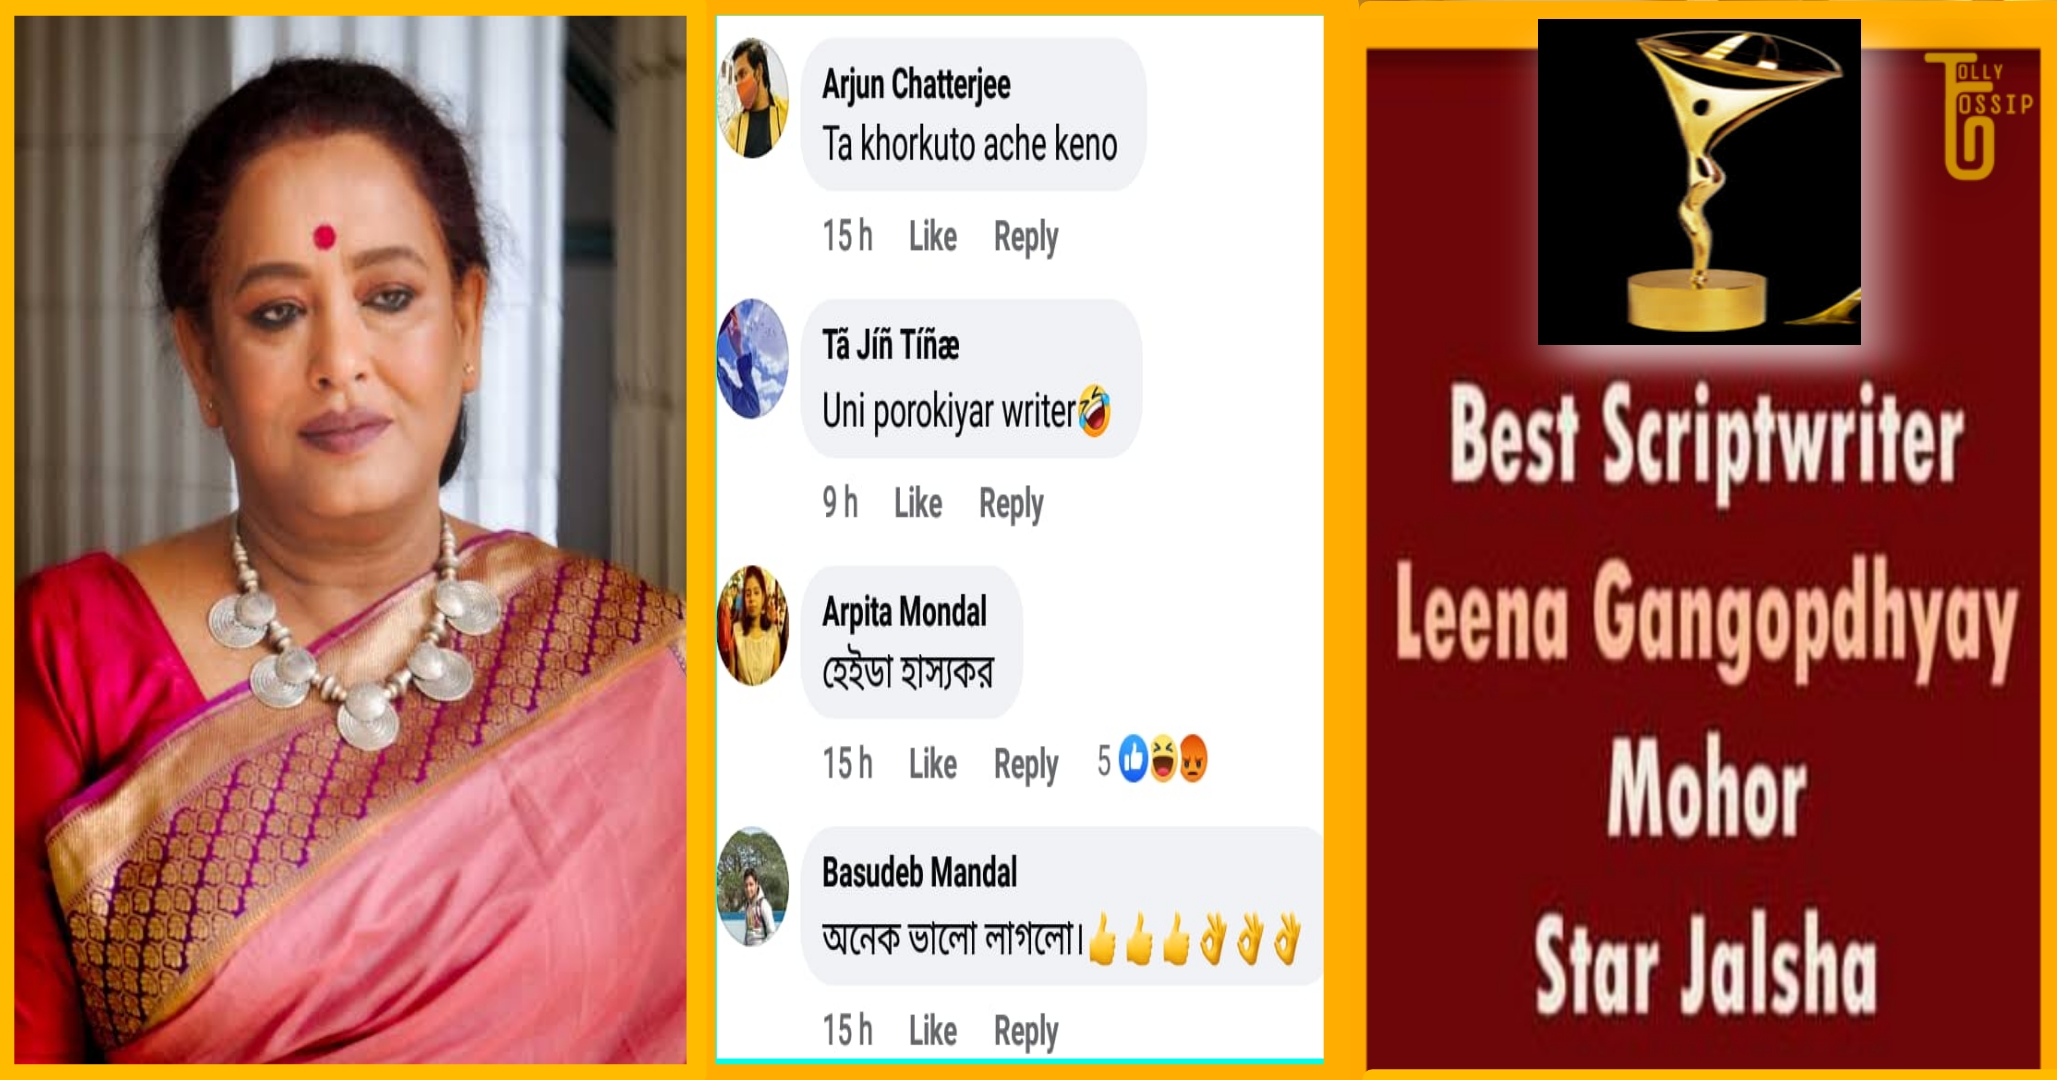 Leena Ganguly Best Writer